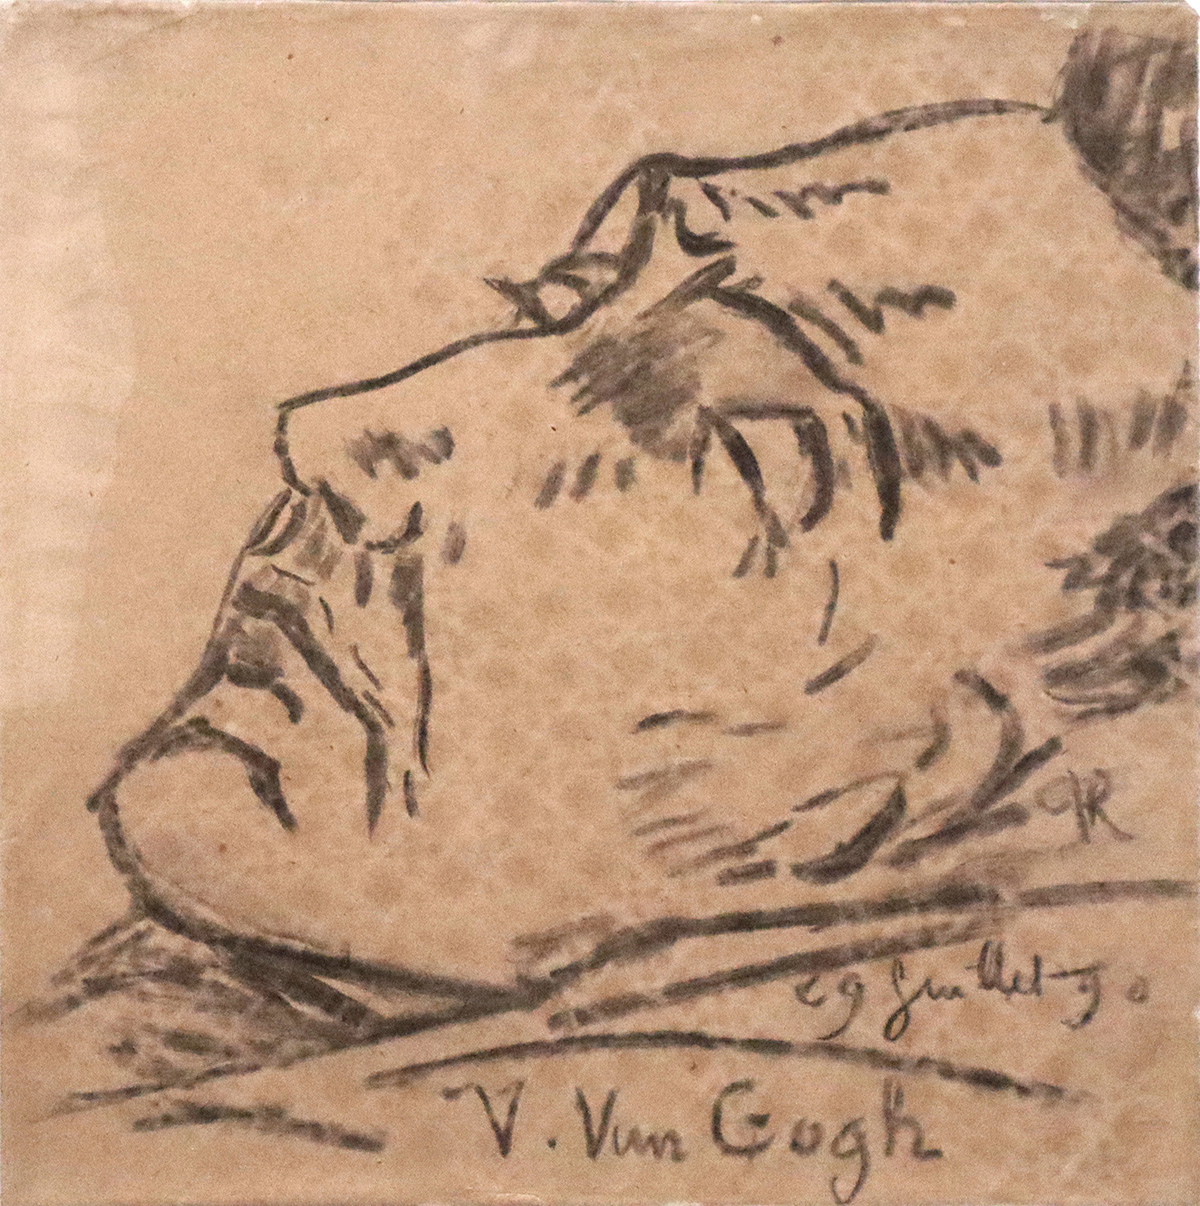 Dessin mortuaire de Van Gogh réalisé par le Dr Paul Gachet le 29 juillet 1890<br />
Photographie © Raymond Martinez le 9 novembre 2023 lors de l’exposition<br />
« Van Gogh à Auvers » au Musée d’Orsay<br />
